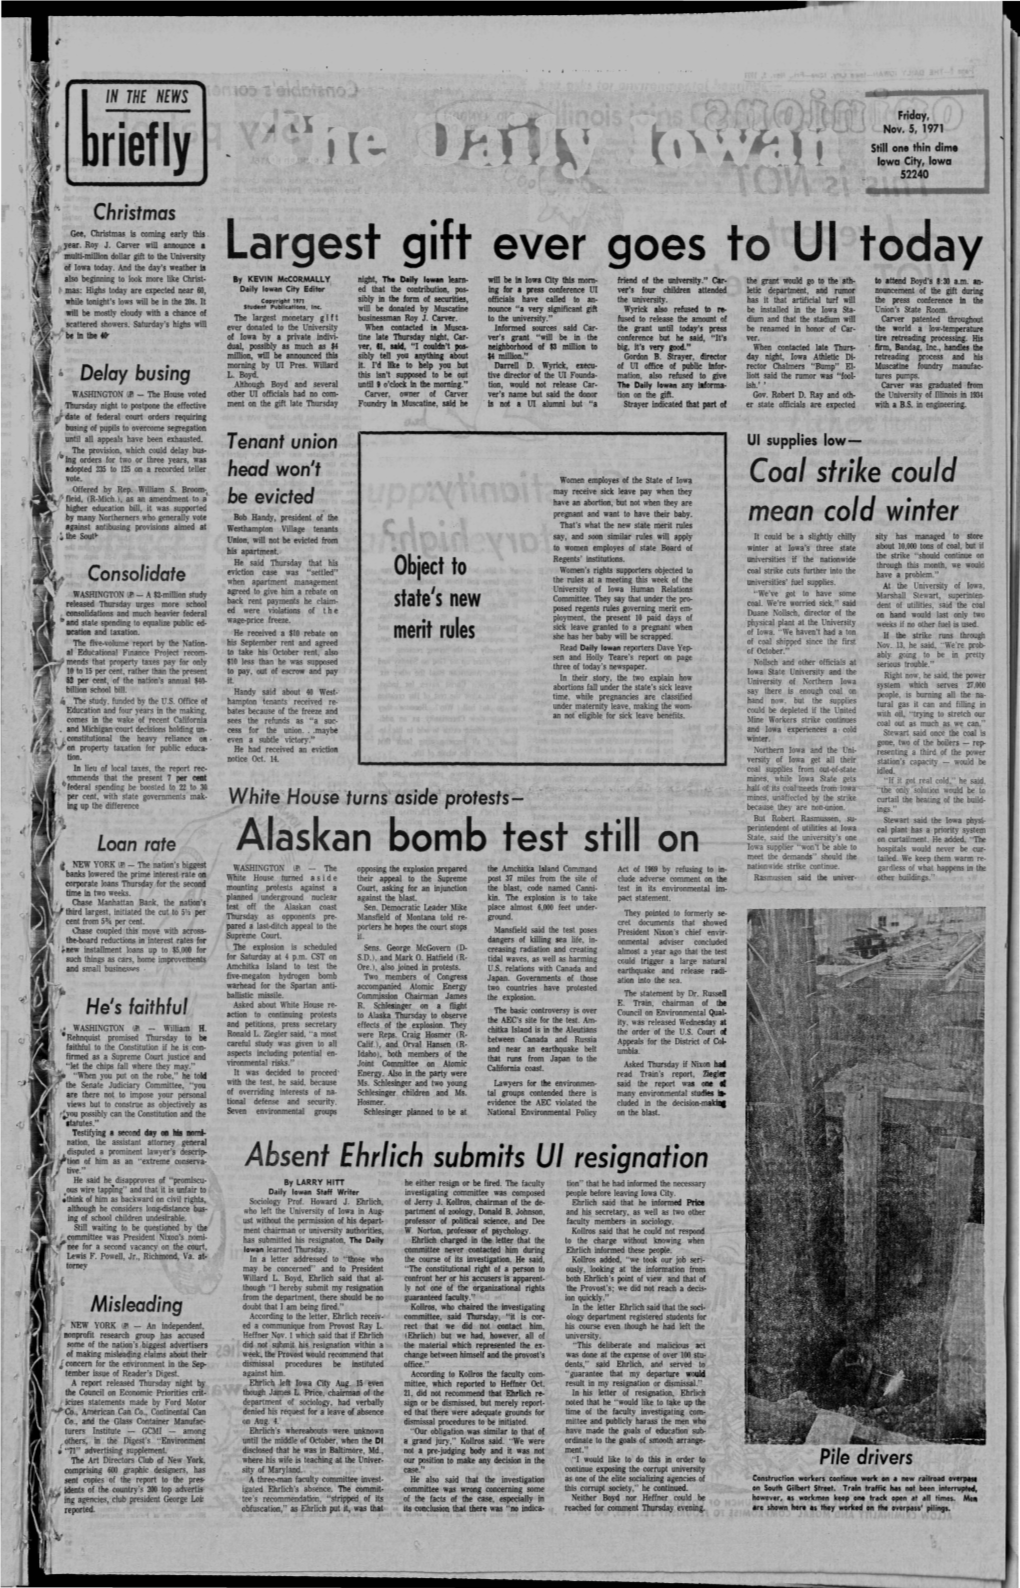 Daily Iowan (Iowa City, Iowa), 1971-11-05